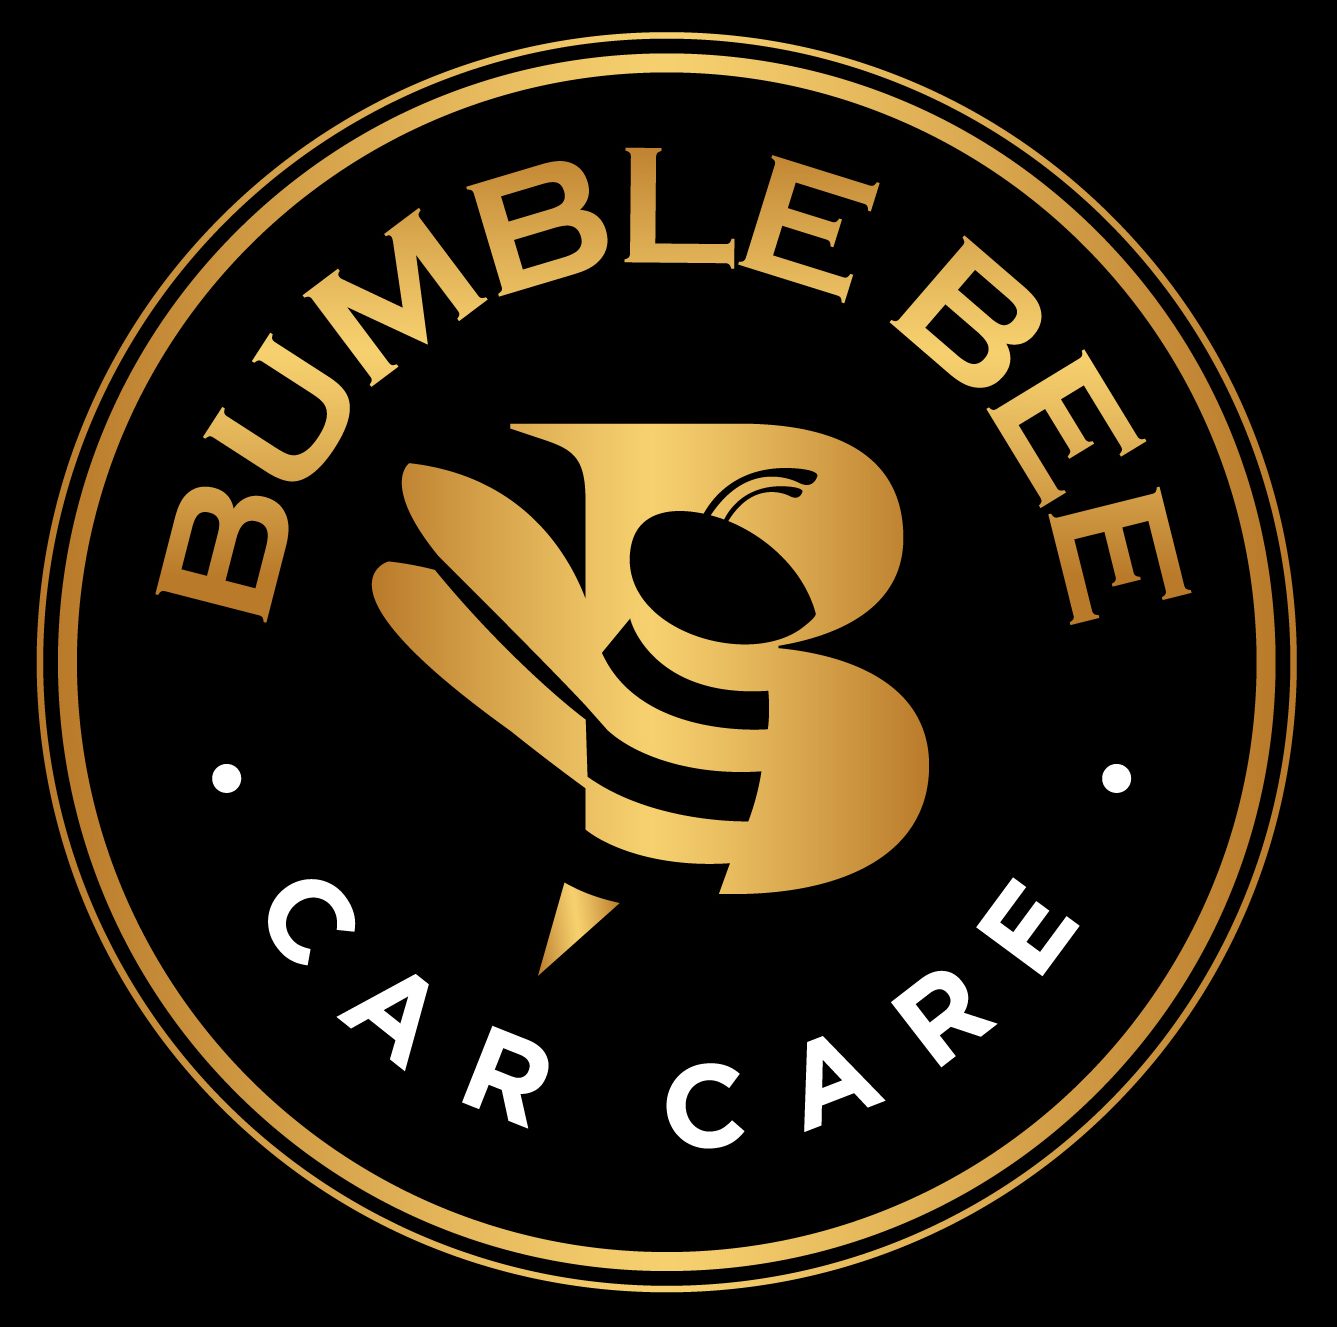 Bumble Bee Car Care